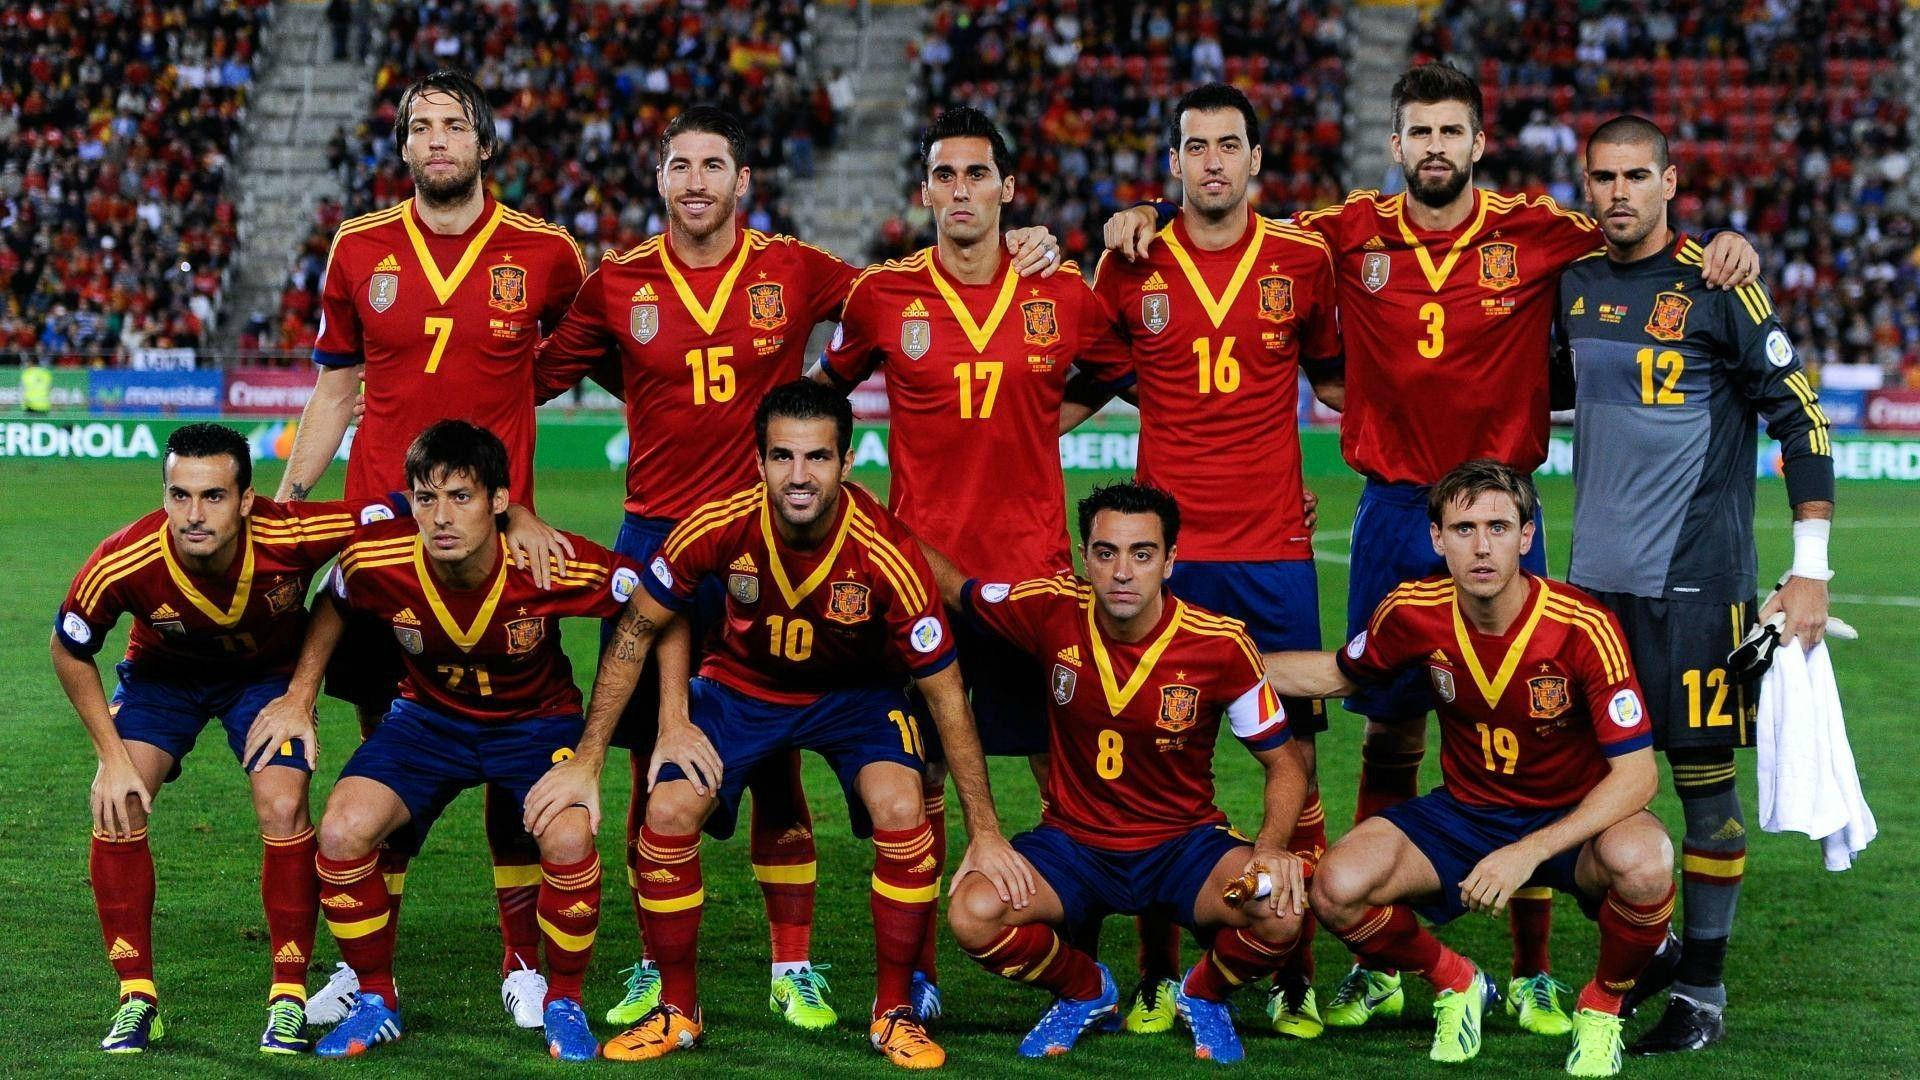 2010 Fifa World Cup Spain National Football Team